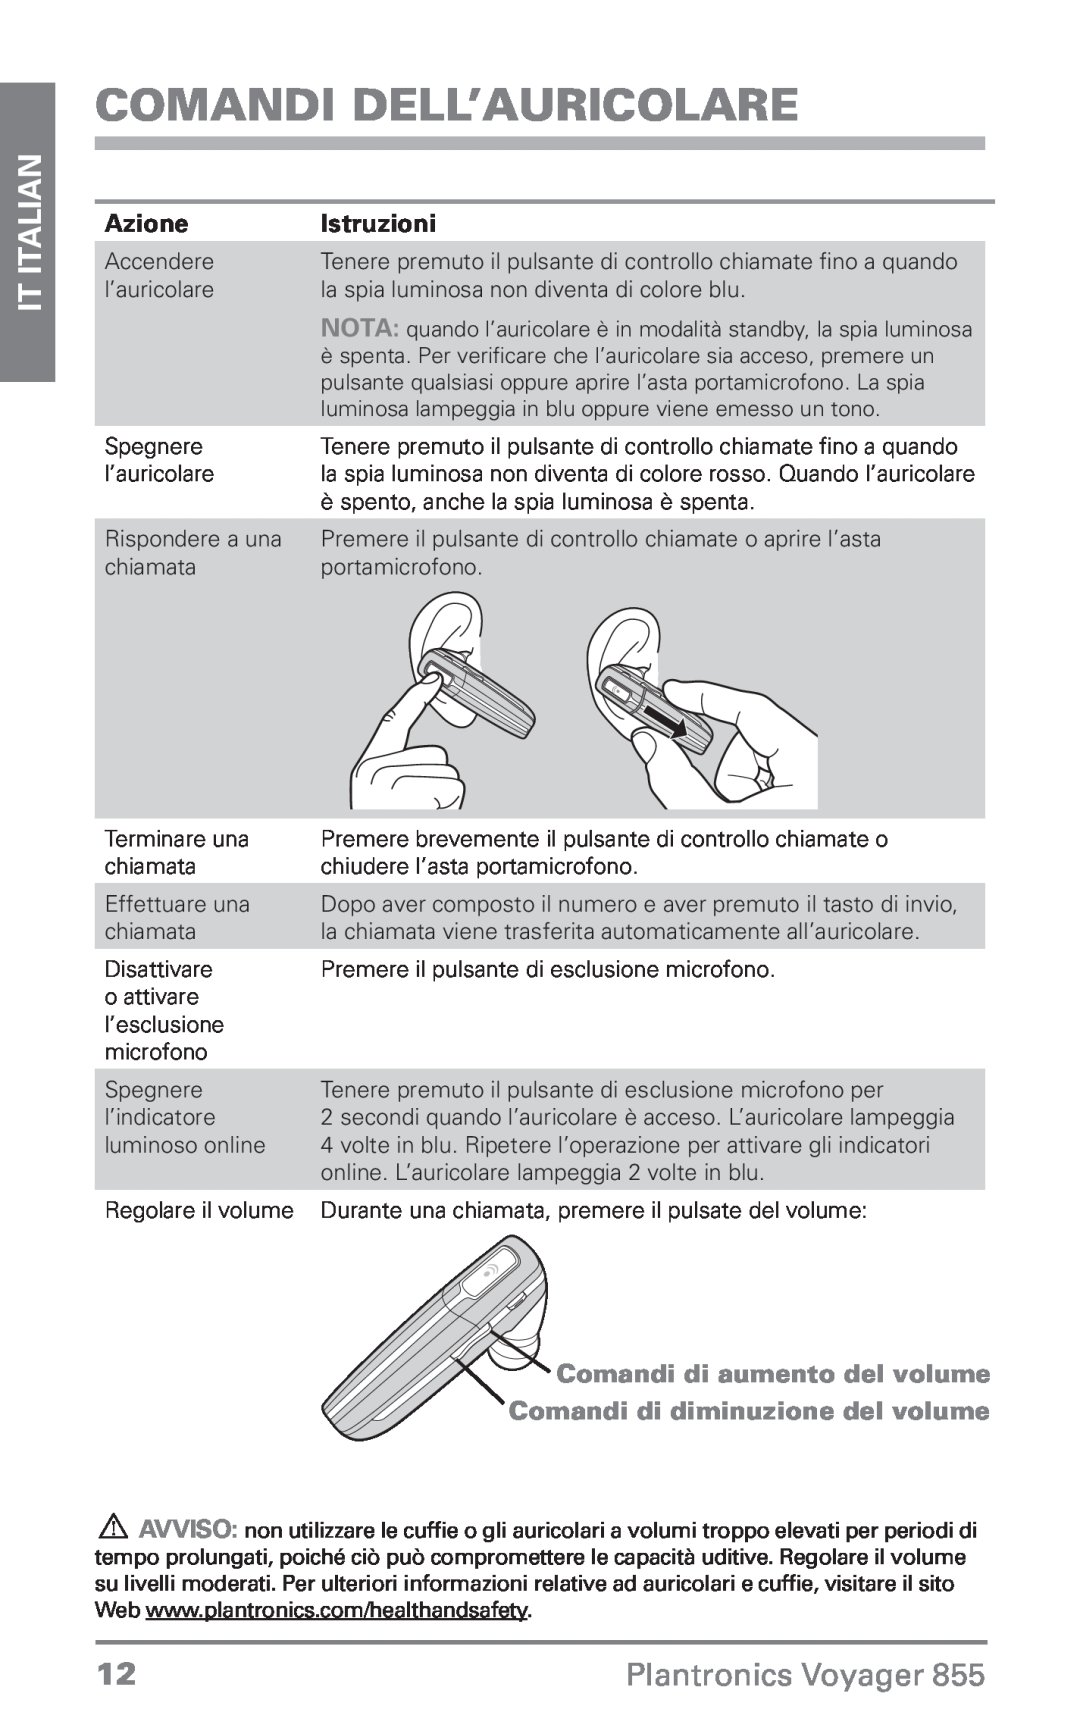 Plantronics Voyager 855 manual do utilizador Comandi dell’auricolare, IT Italian, Plantronics Voyager, Azione, Istruzioni 